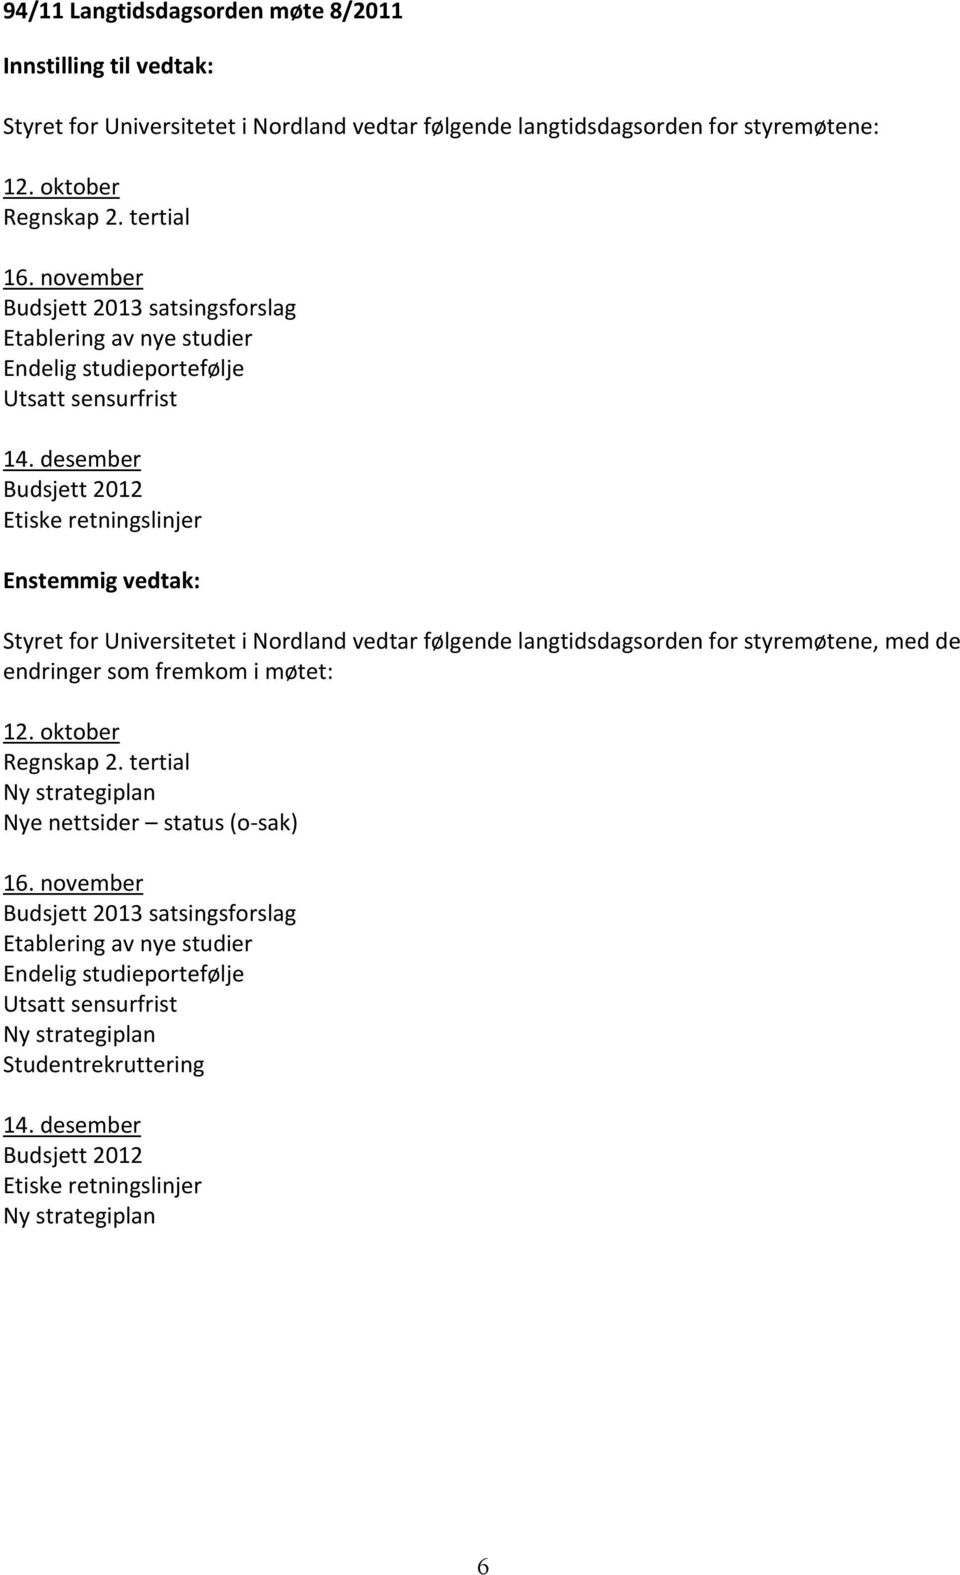 desember Budsjett 2012 Etiske retningslinjer Styret for Universitetet i Nordland vedtar følgende langtidsdagsorden for styremøtene, med de endringer som fremkom i møtet: 12.